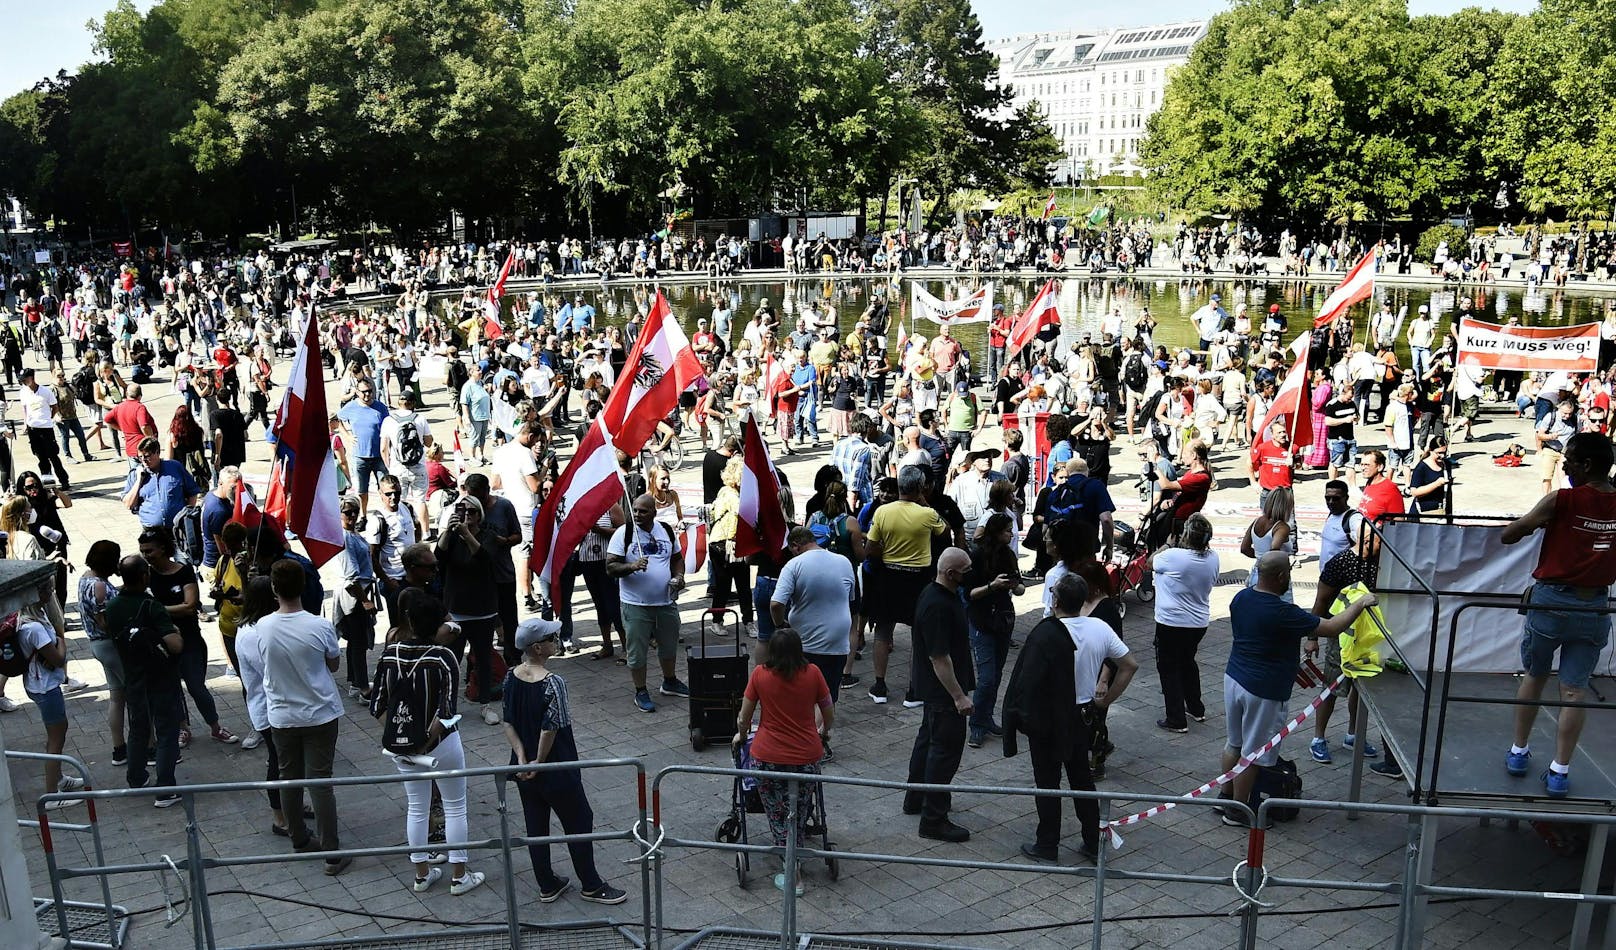 Gleich mehrere Corona-Demos ziehen am Samstag durch die Wiener City. Am Karlsplatz wollen sie sich zur "Mega-Demo" vereinigen.